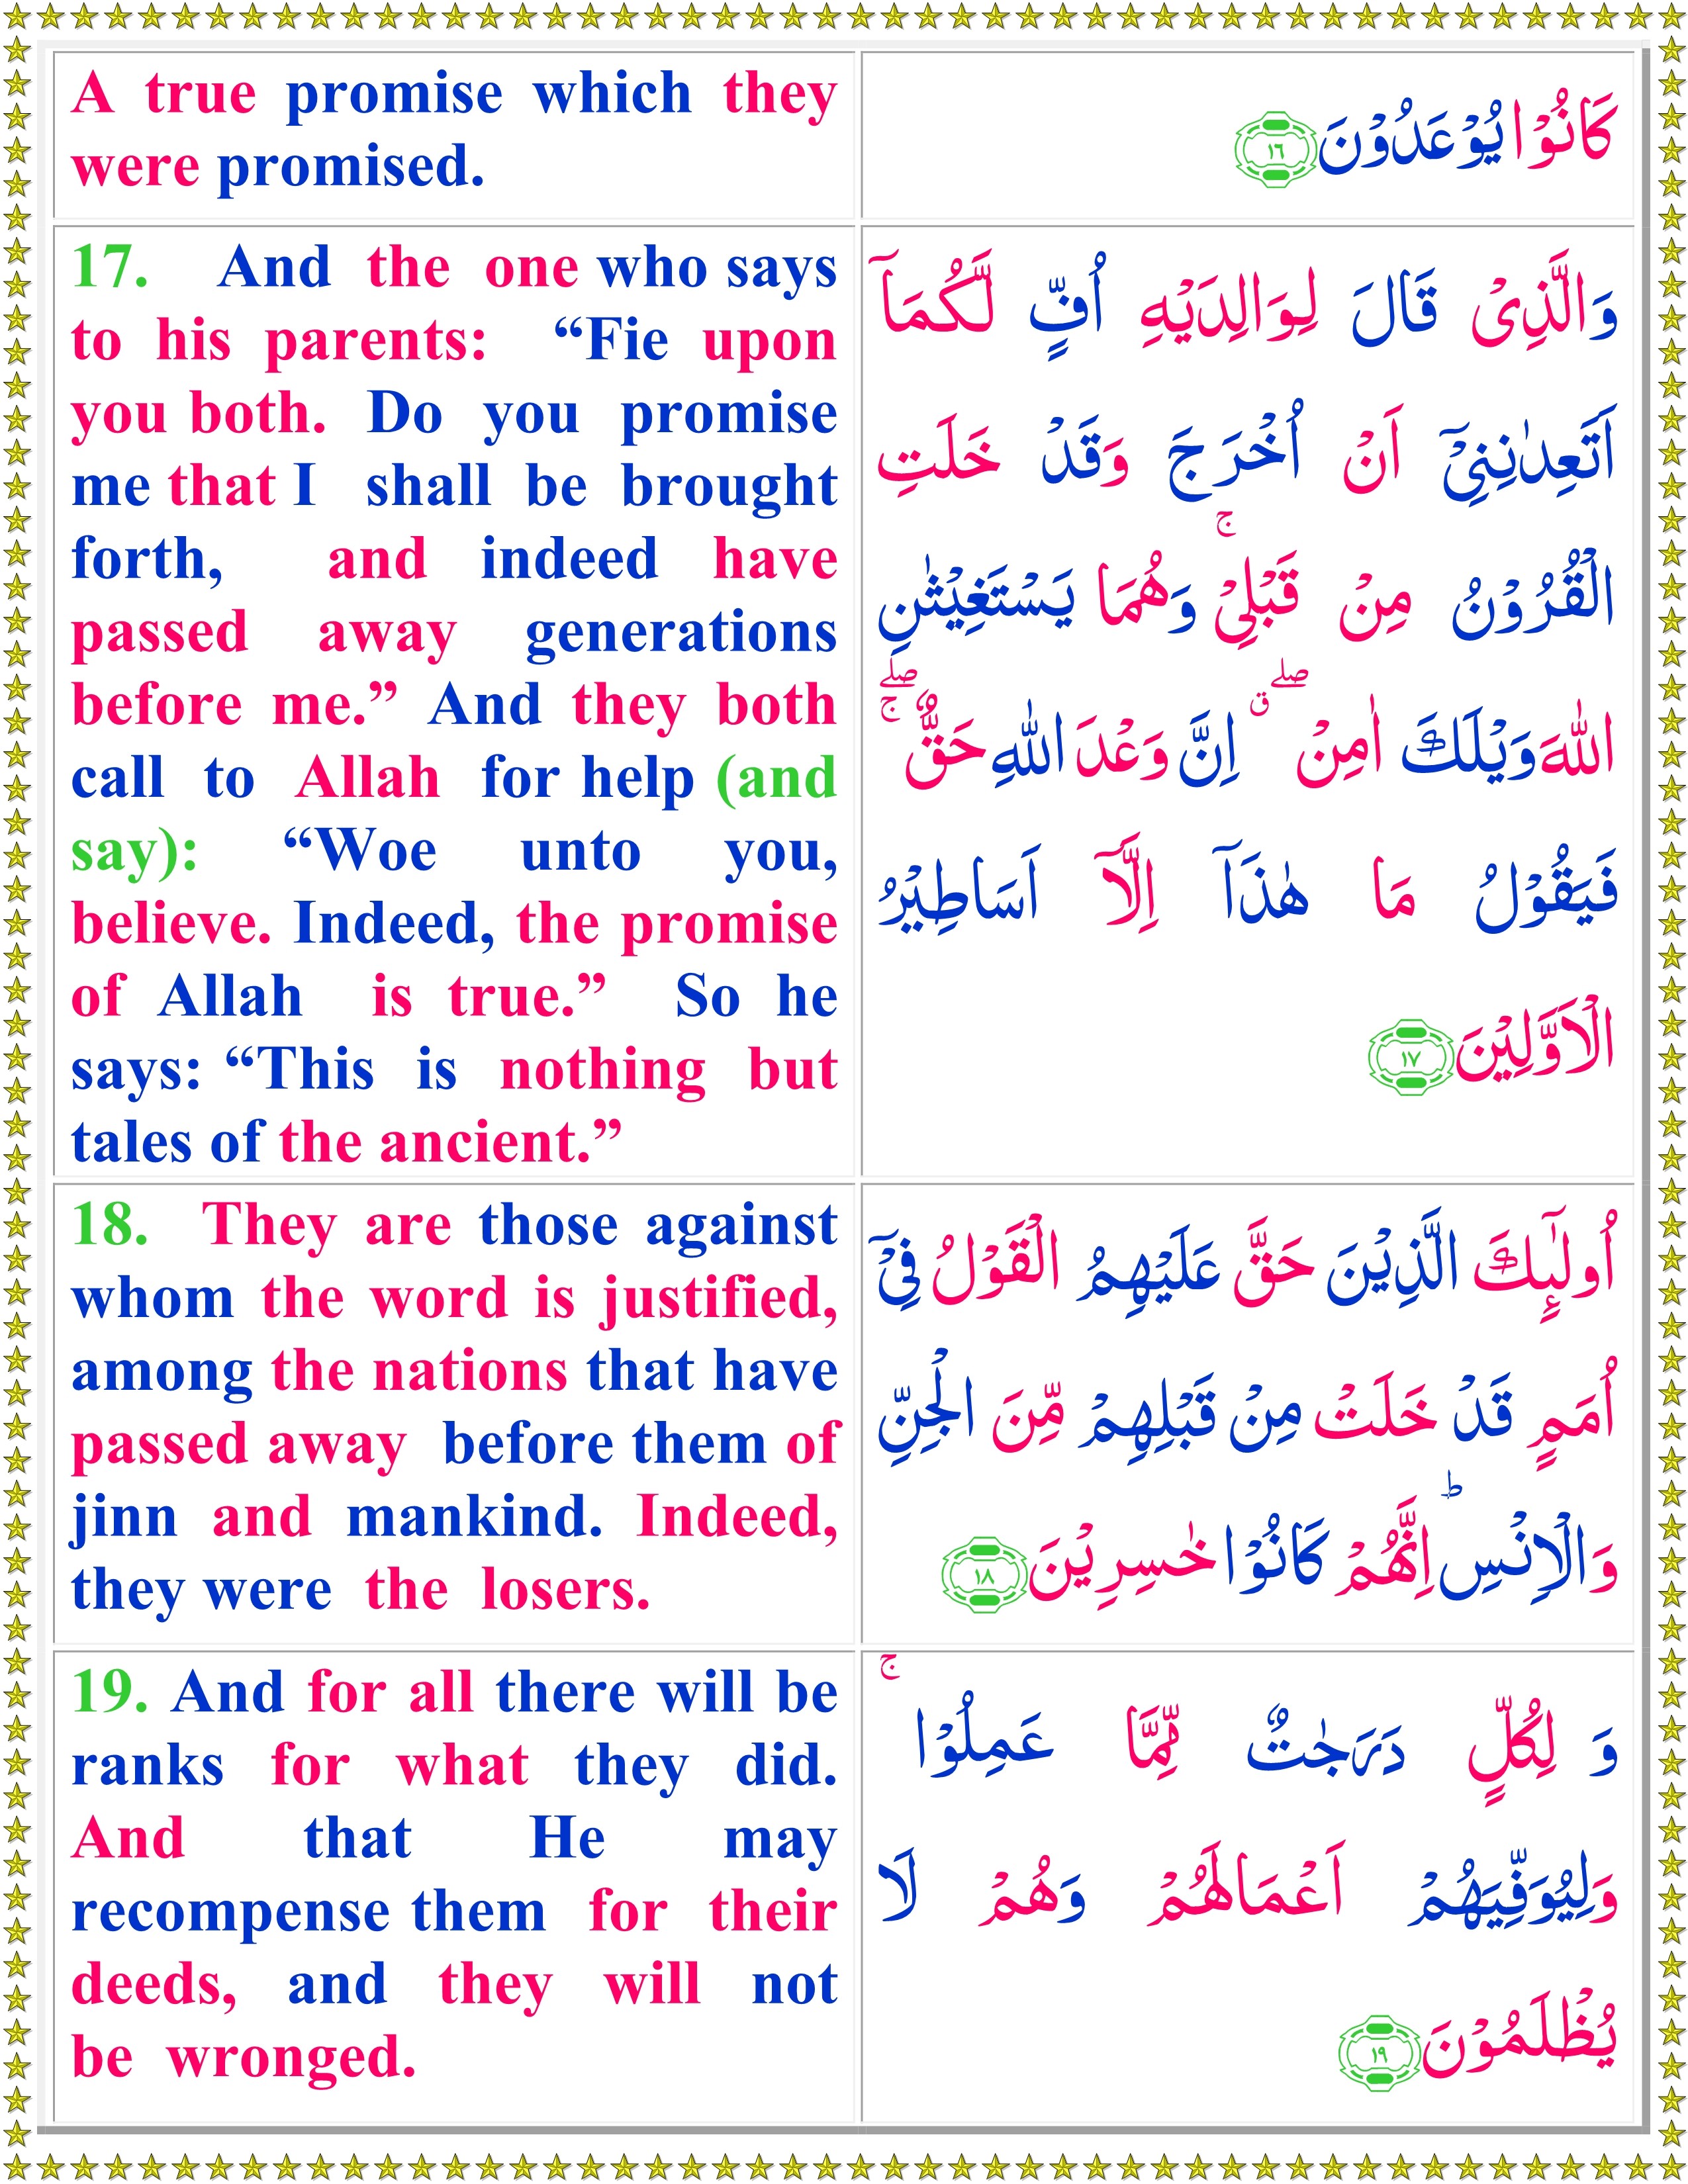 Surah Al Ahqaf Ayat 15 : Jika telah selesai membaca bacaannya, kemudian